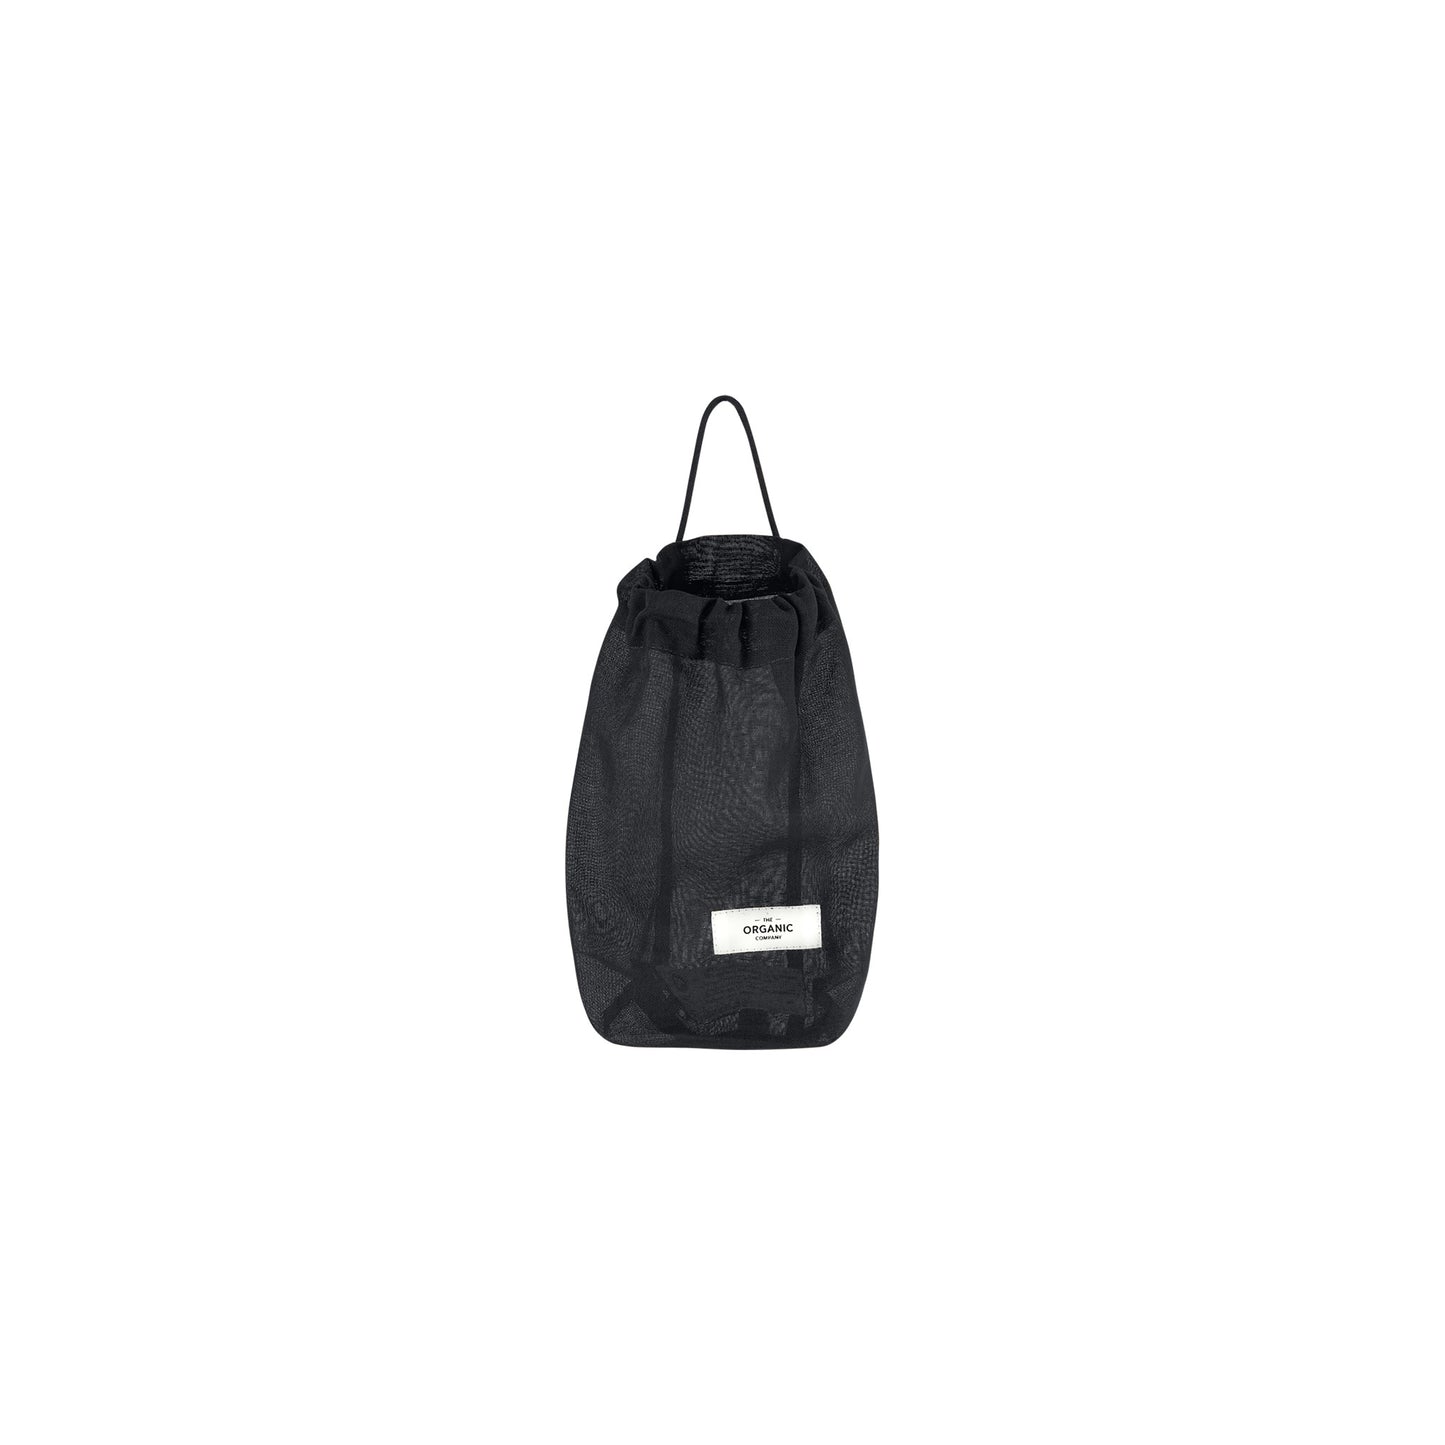 All Purpose Bag Small - Black